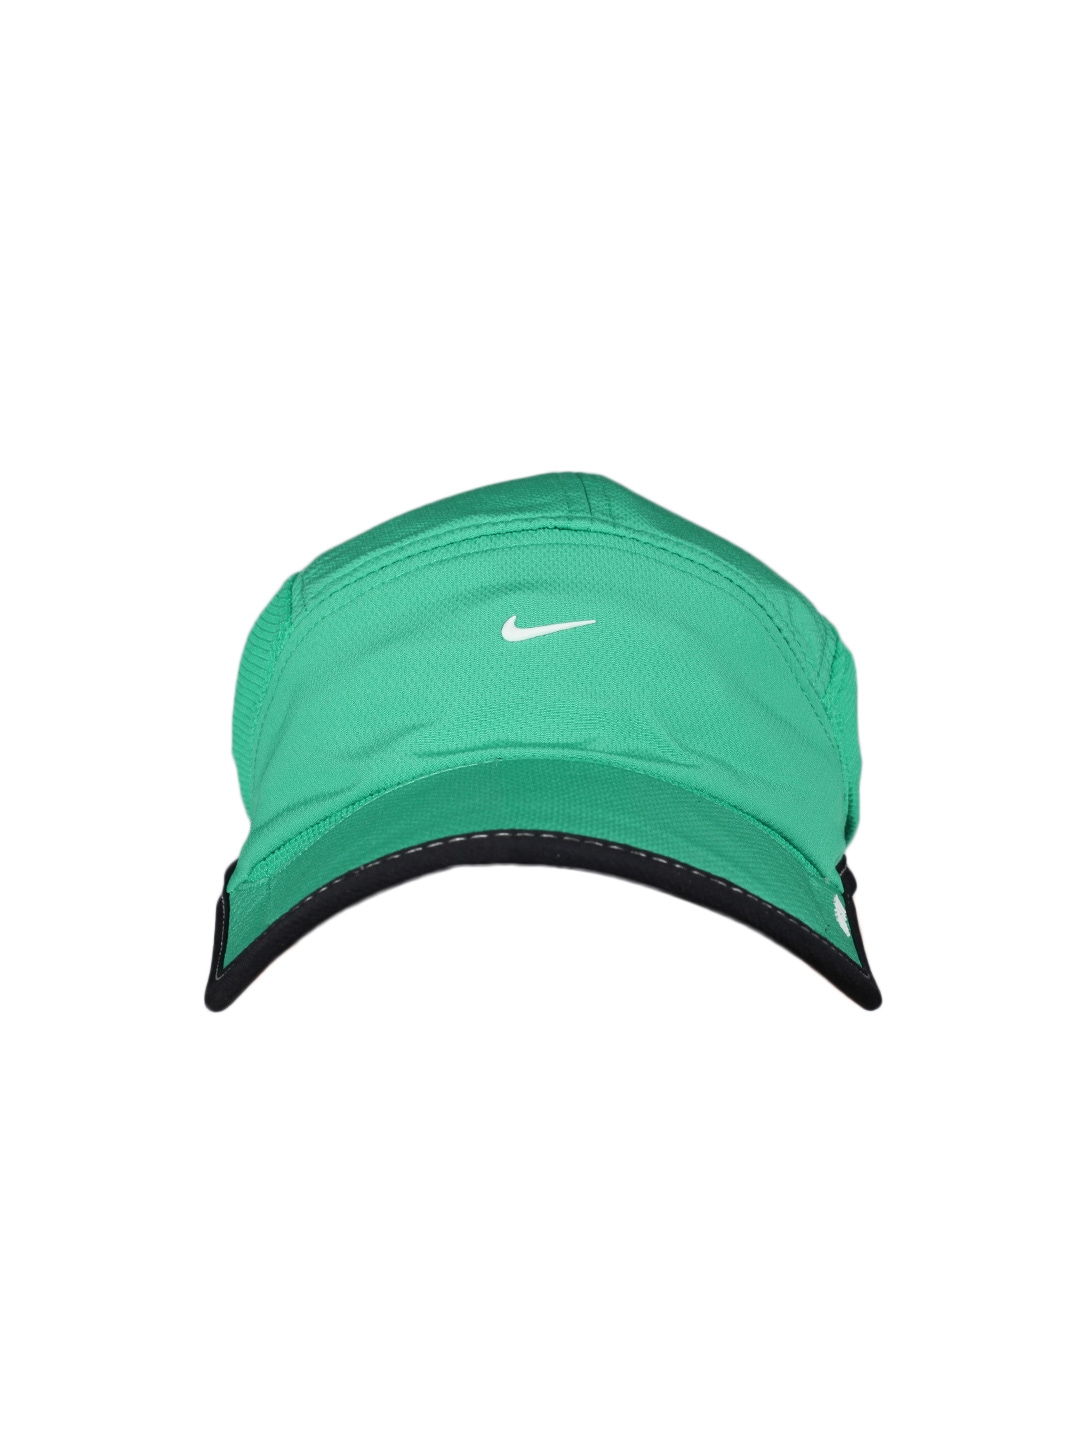 Nike Unisex Green Daybreak Cap